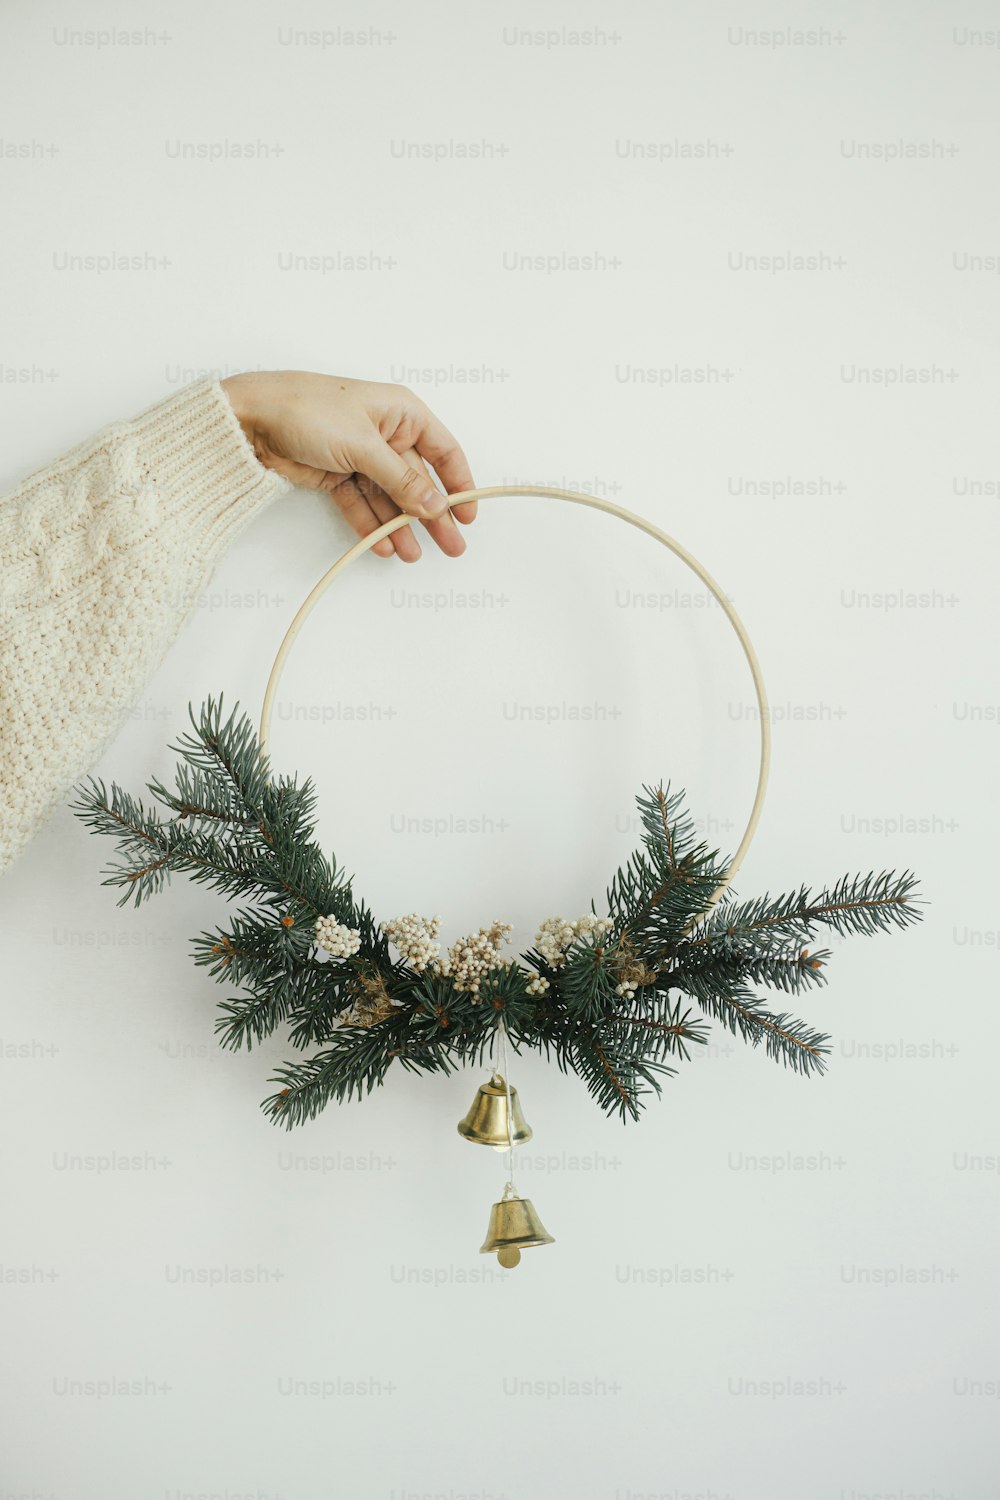 Mano en suéter acogedor sosteniendo una corona navideña moderna sobre fondo de pared blanca. ¡Feliz Navidad y Felices Fiestas! Corona boho navideña minimalista con cascabeles en mano. Tiempo atmosférico